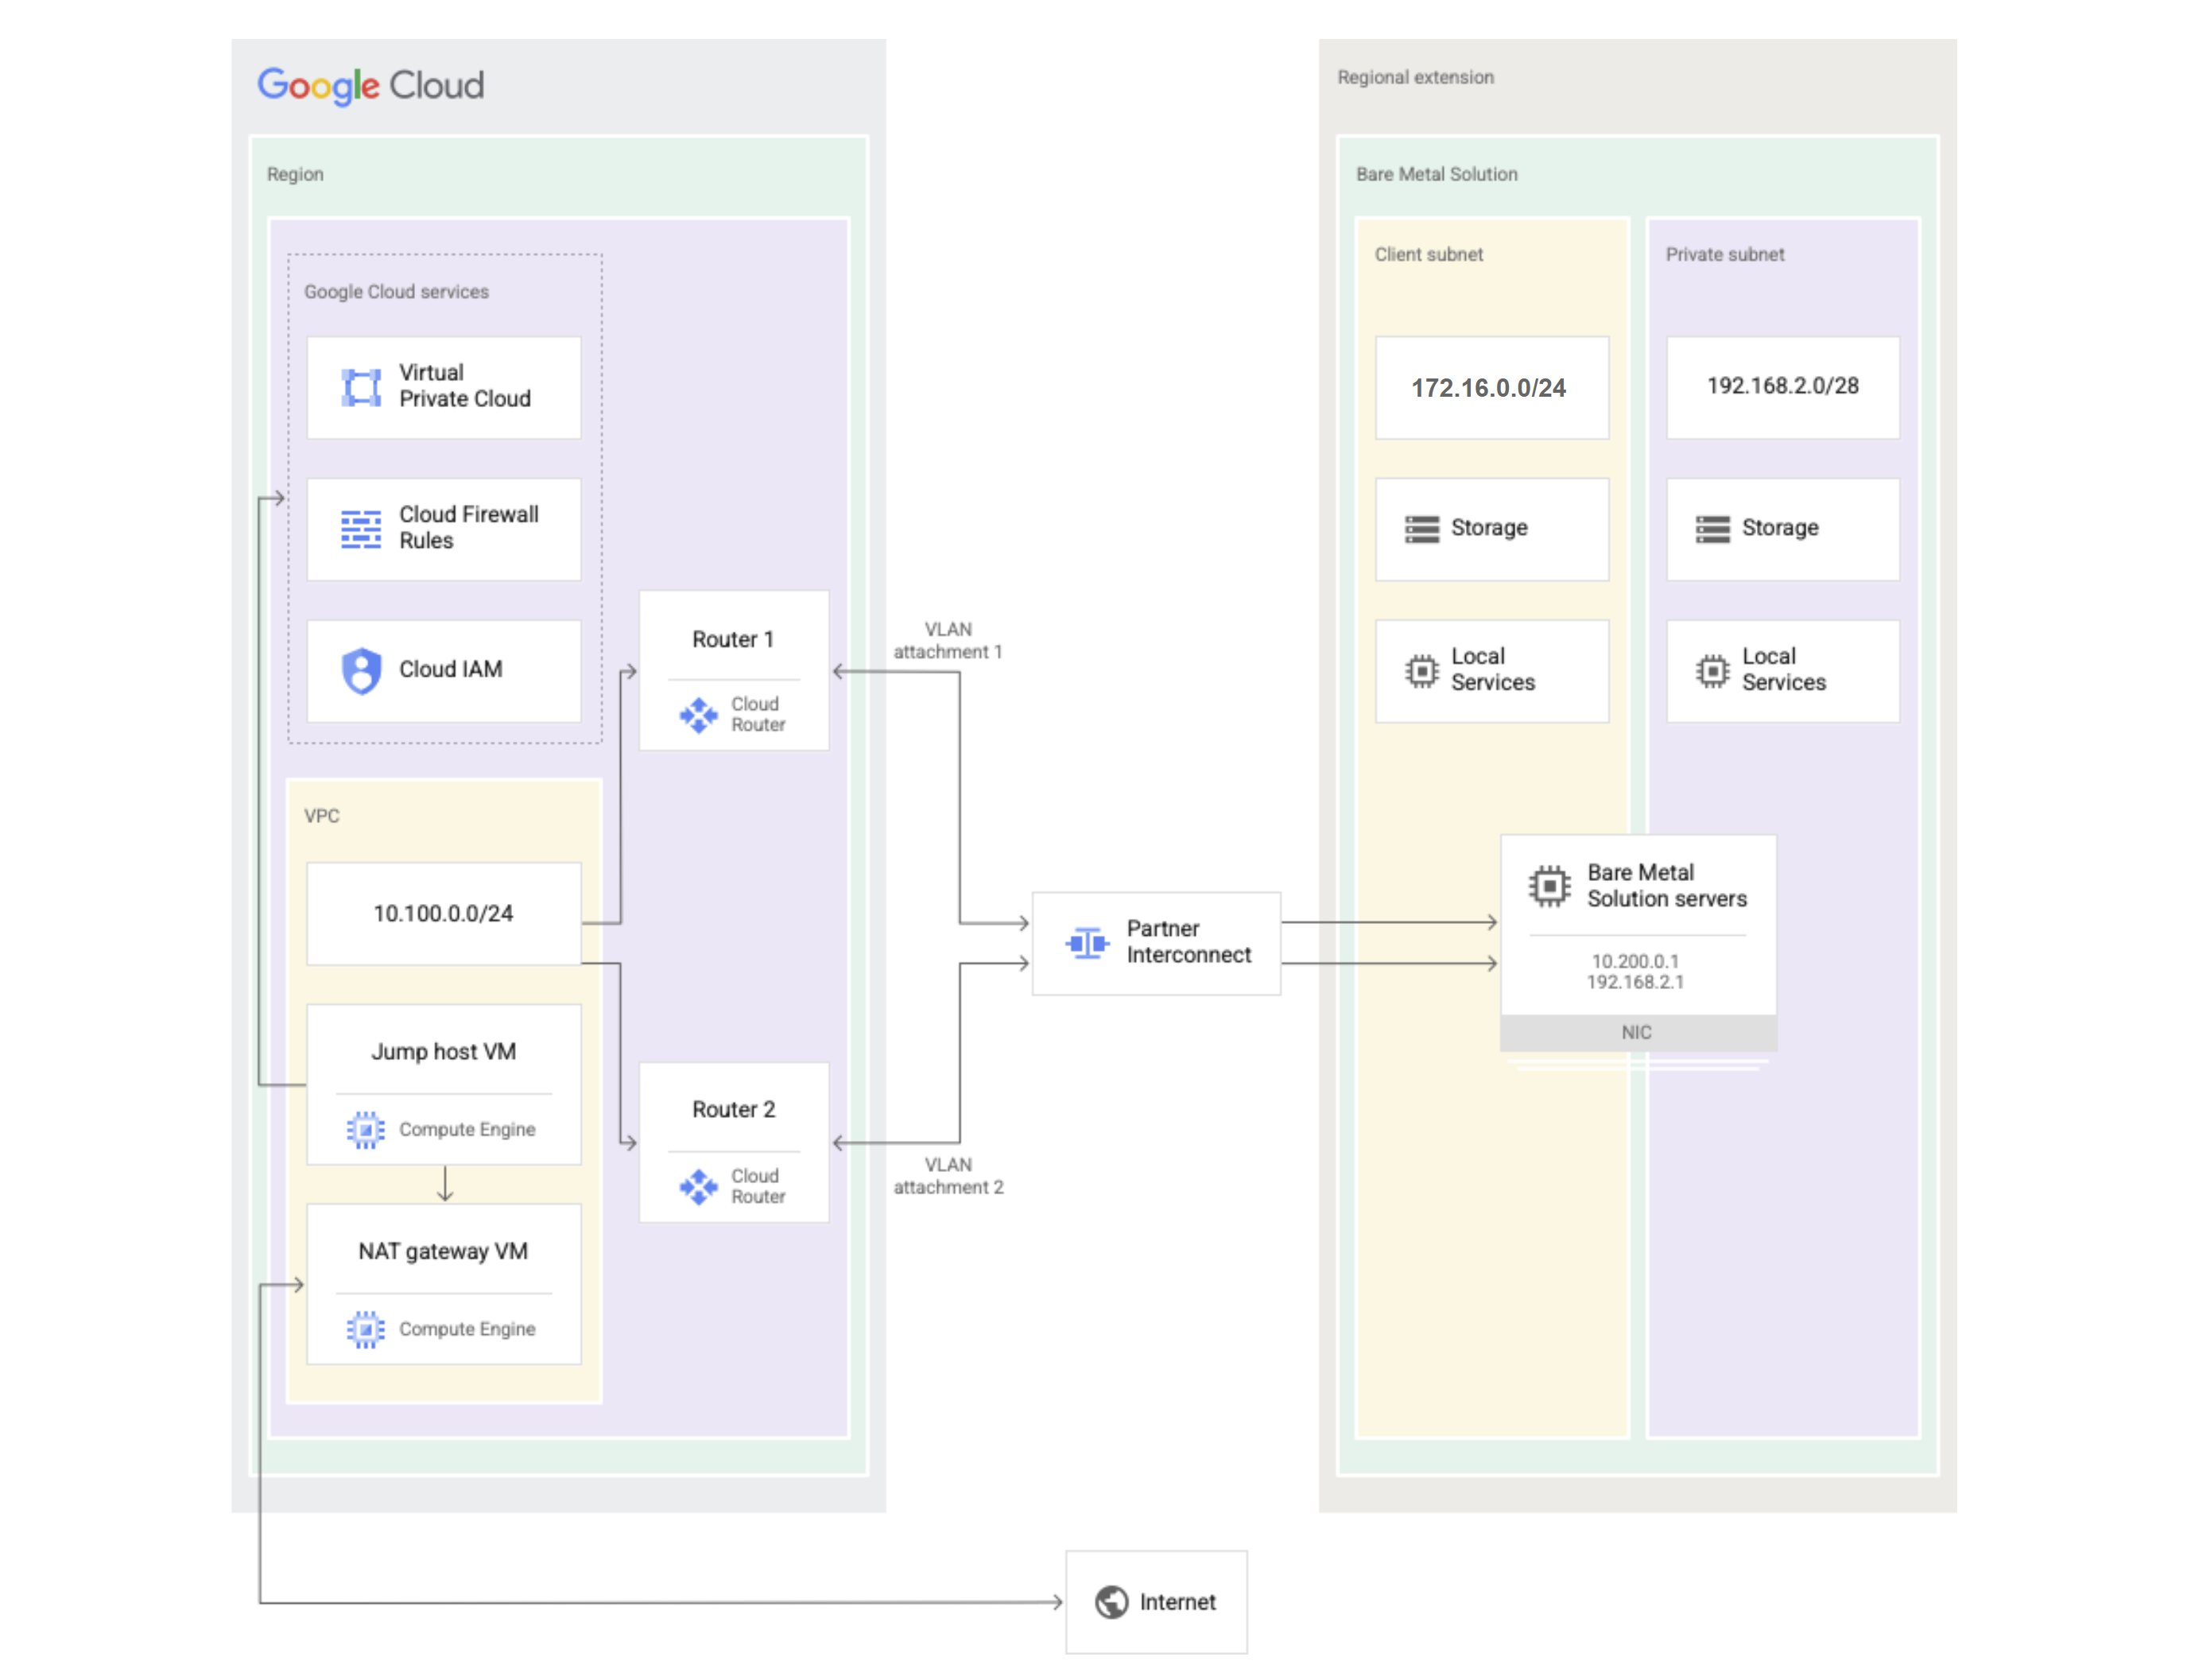 Bare Metal Solution の図は、どのコンポーネントが Google Cloud にあり、どのコンポーネントが Bare Metal Solution リージョン拡張にあるかを示しています。